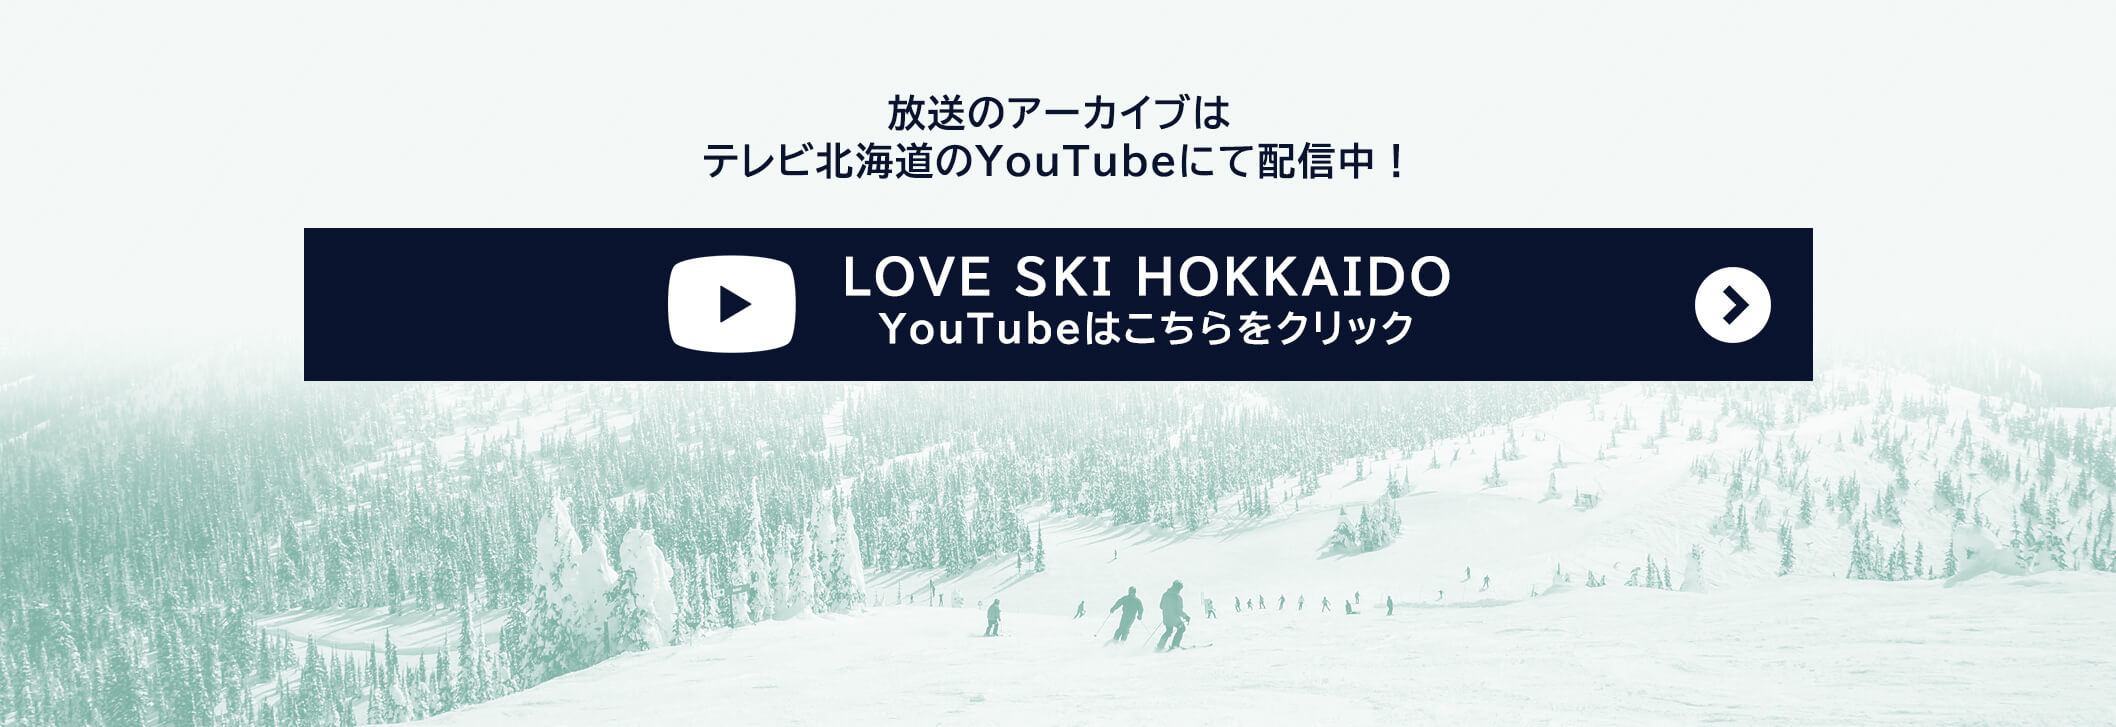 放送のアーカイプはテレビ北海道のYouTubeにて配信中!LOVE SKI HOKKAIDO YouTube はこちらをクリック